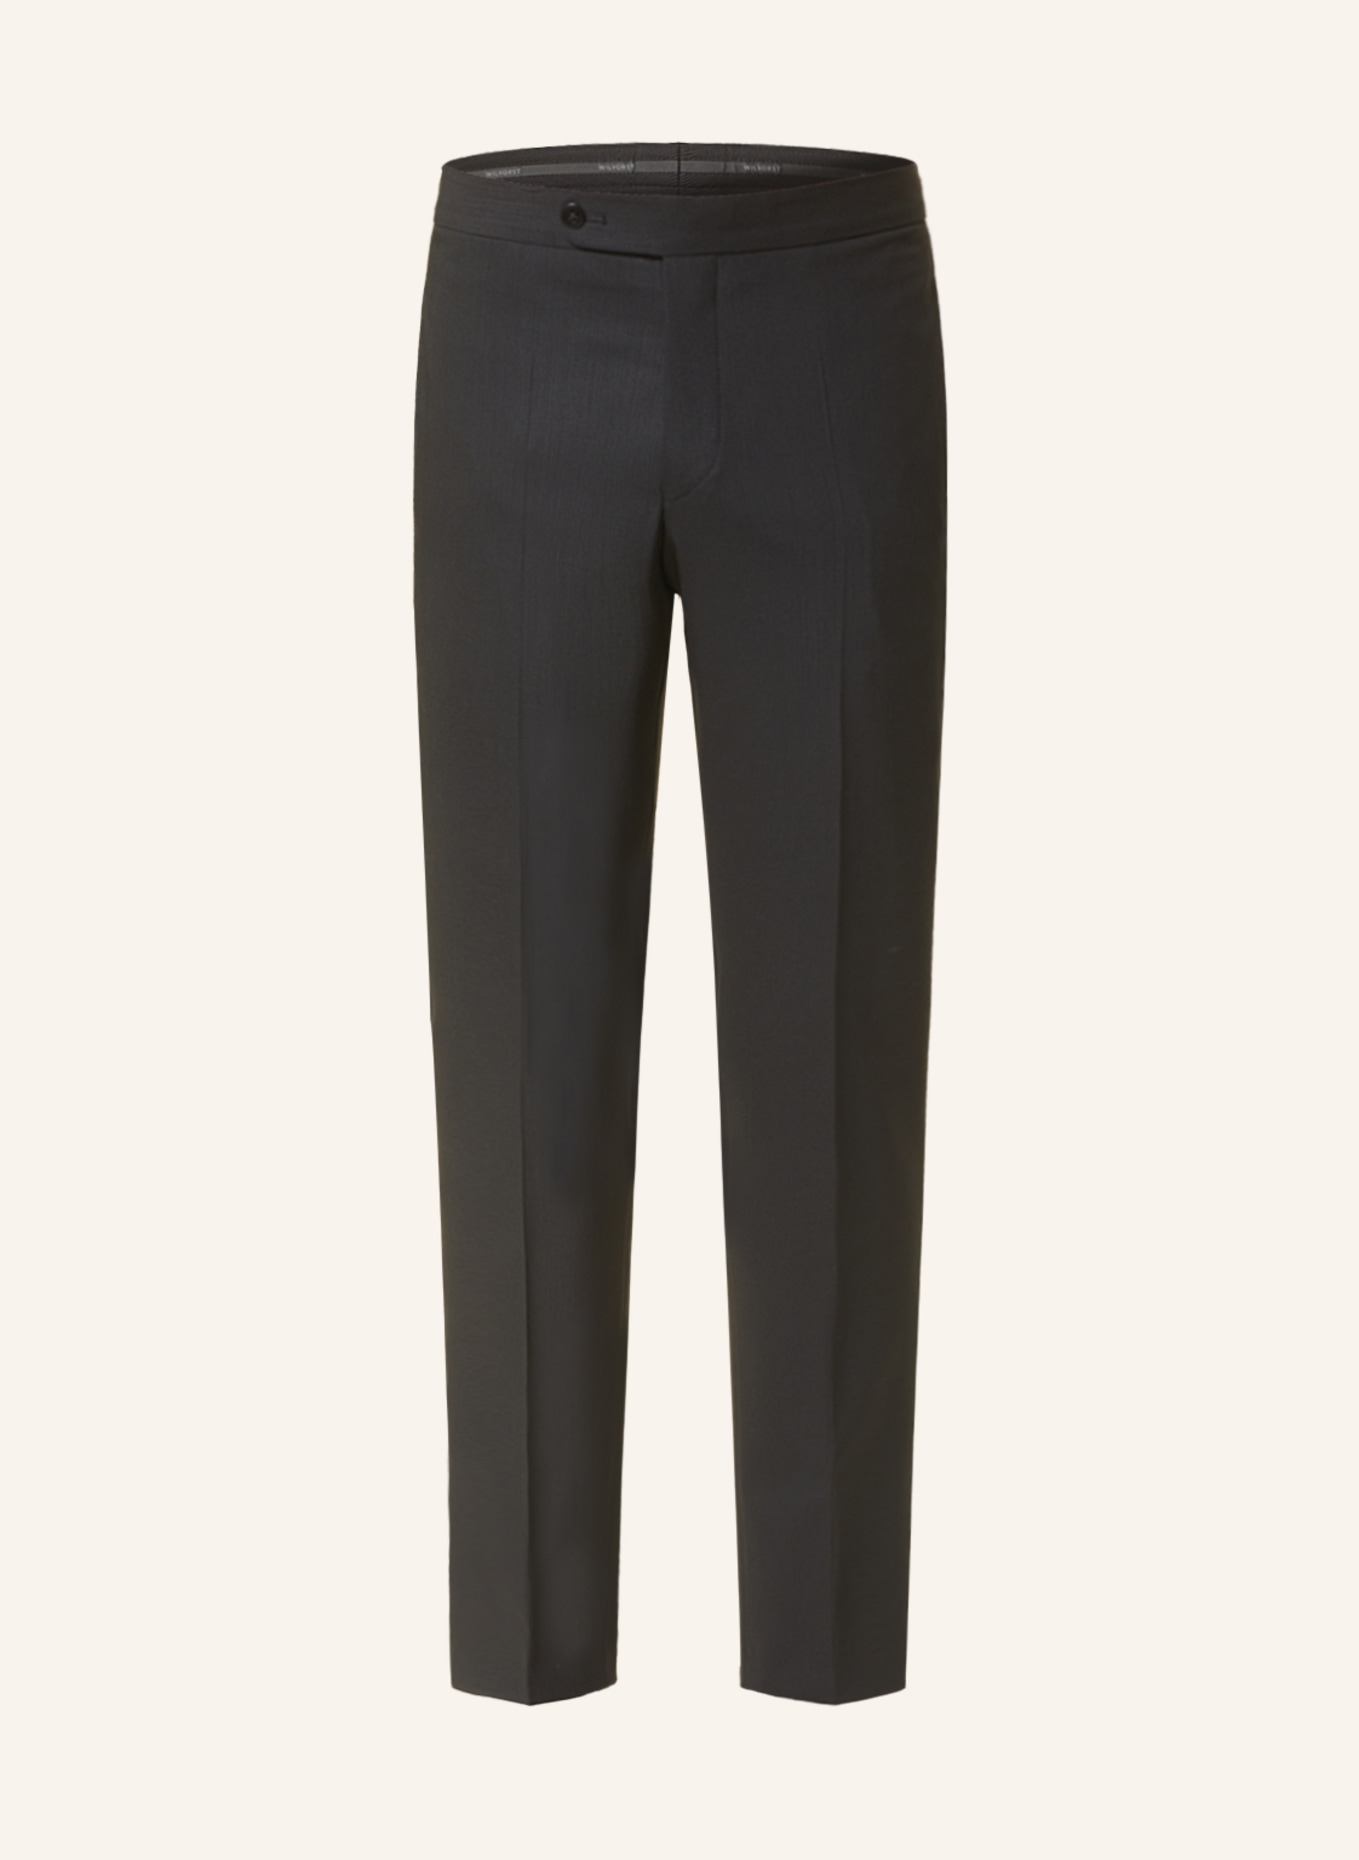 WILVORST Anzughose Slim Fit, Farbe: SCHWARZ (Bild 1)